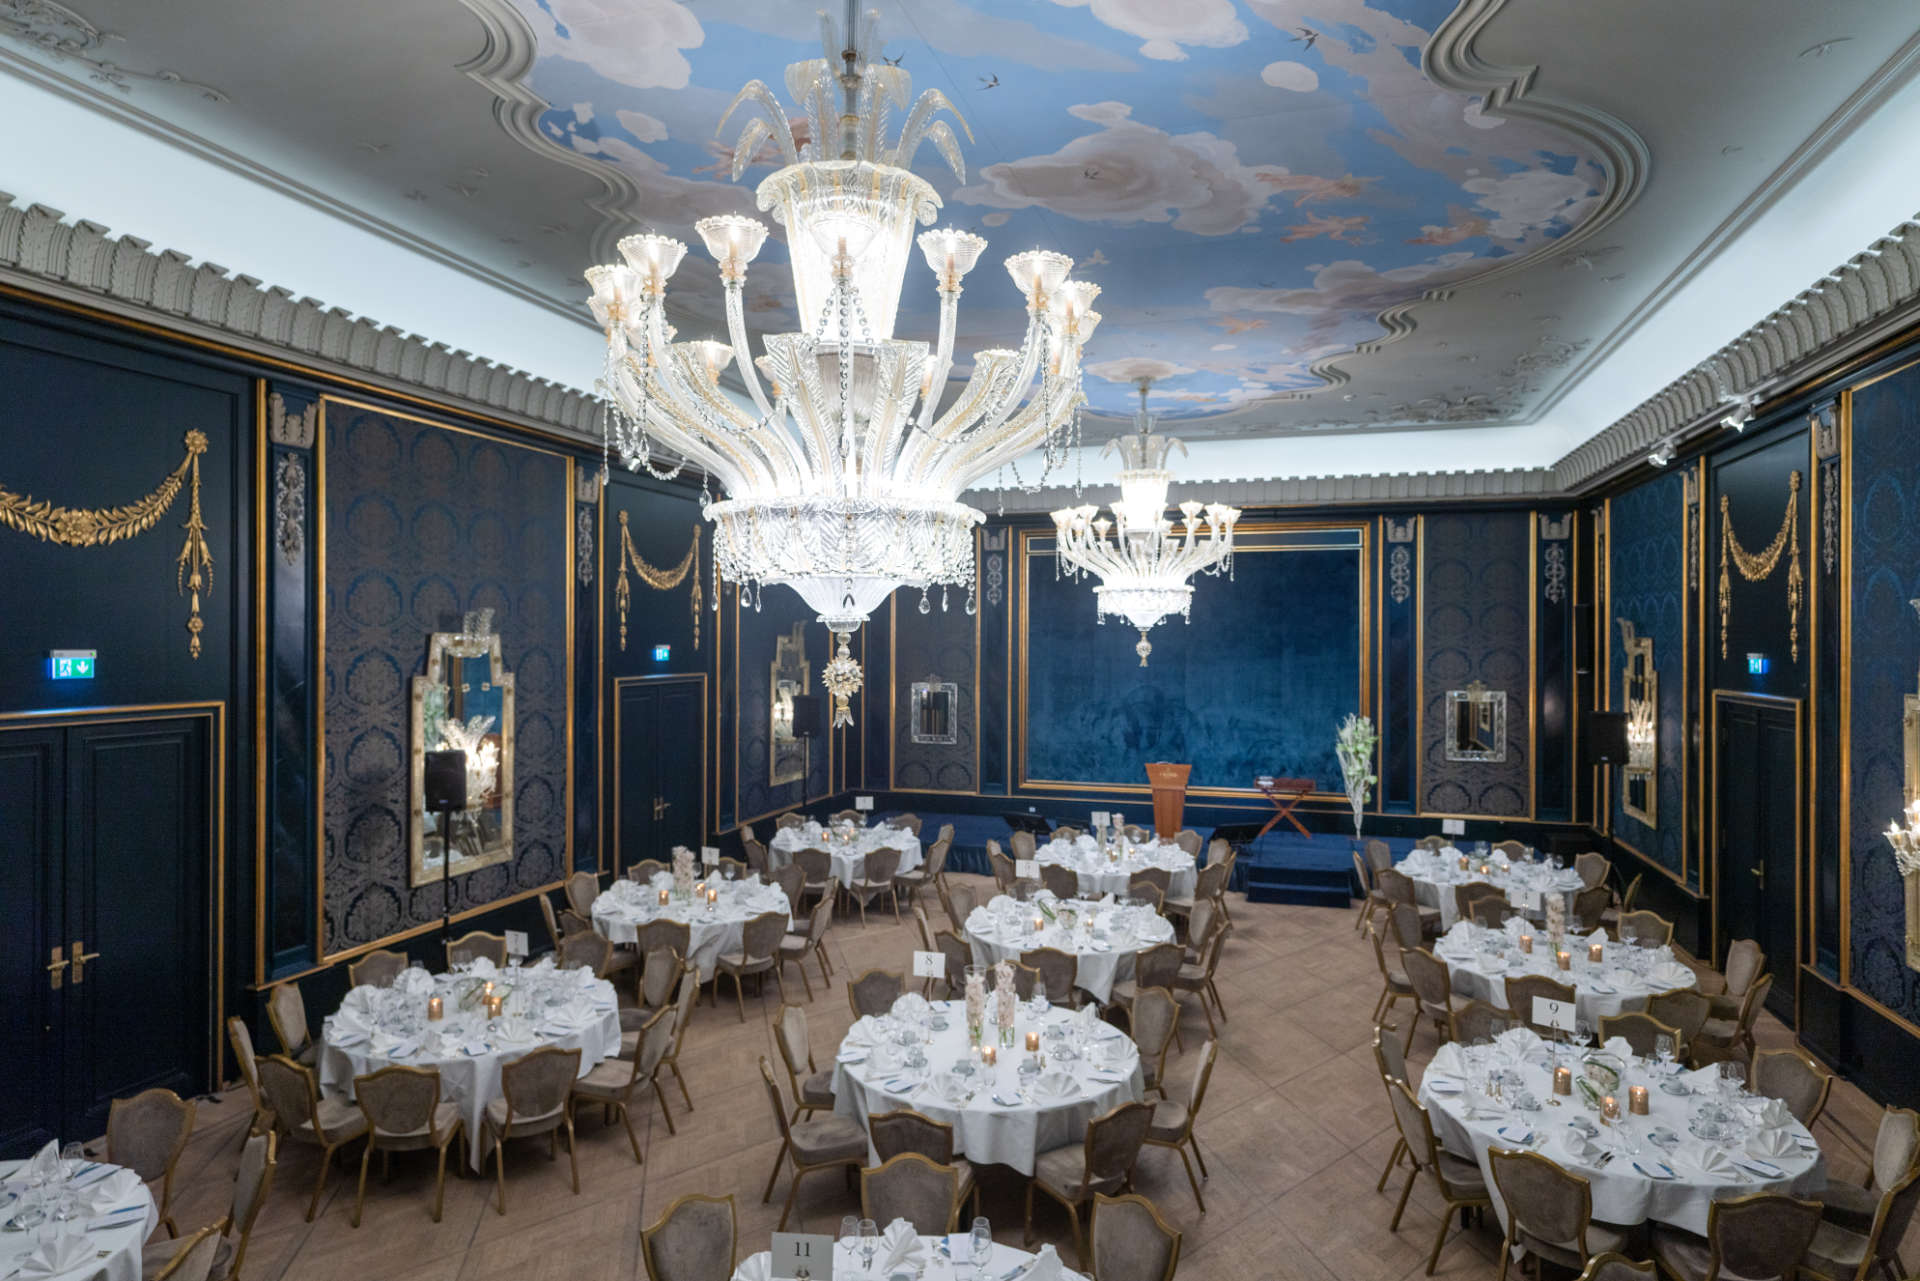 Rococo banquet hall